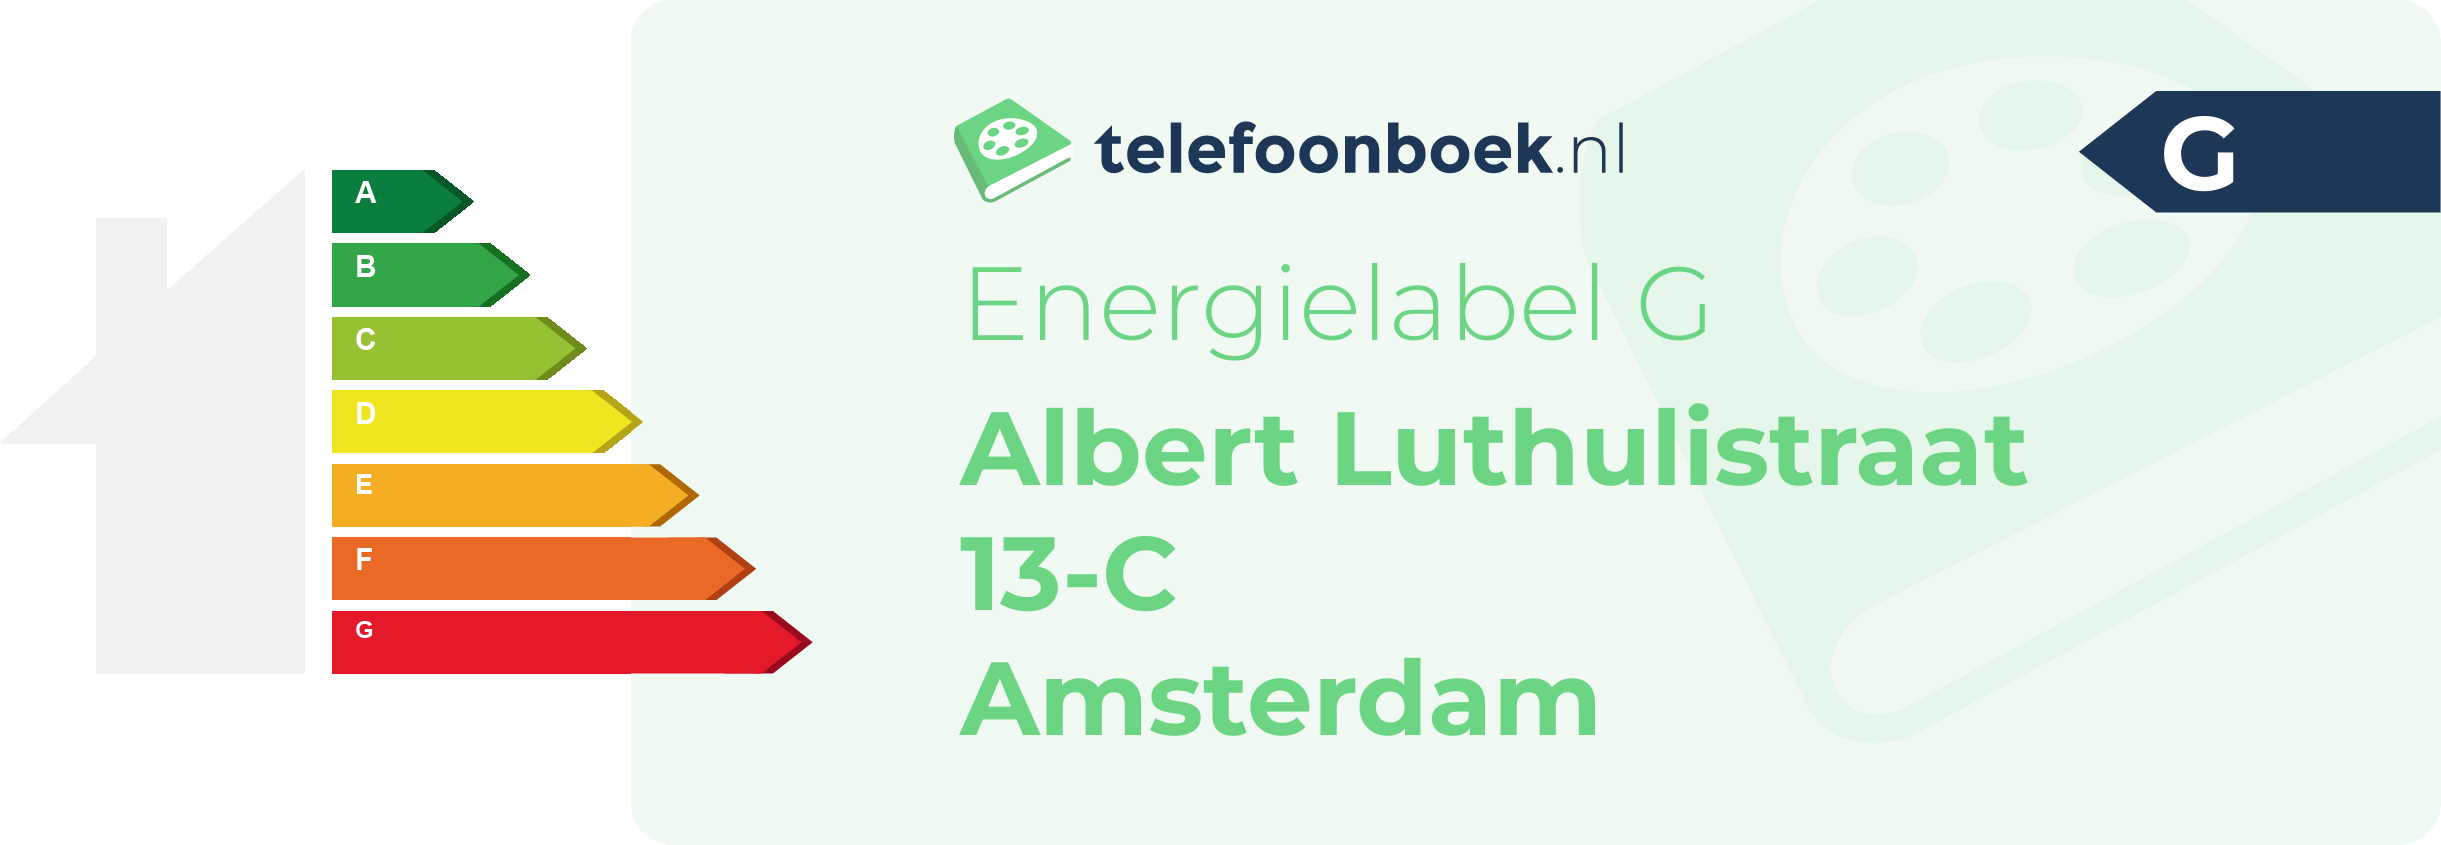 Energielabel Albert Luthulistraat 13-C Amsterdam